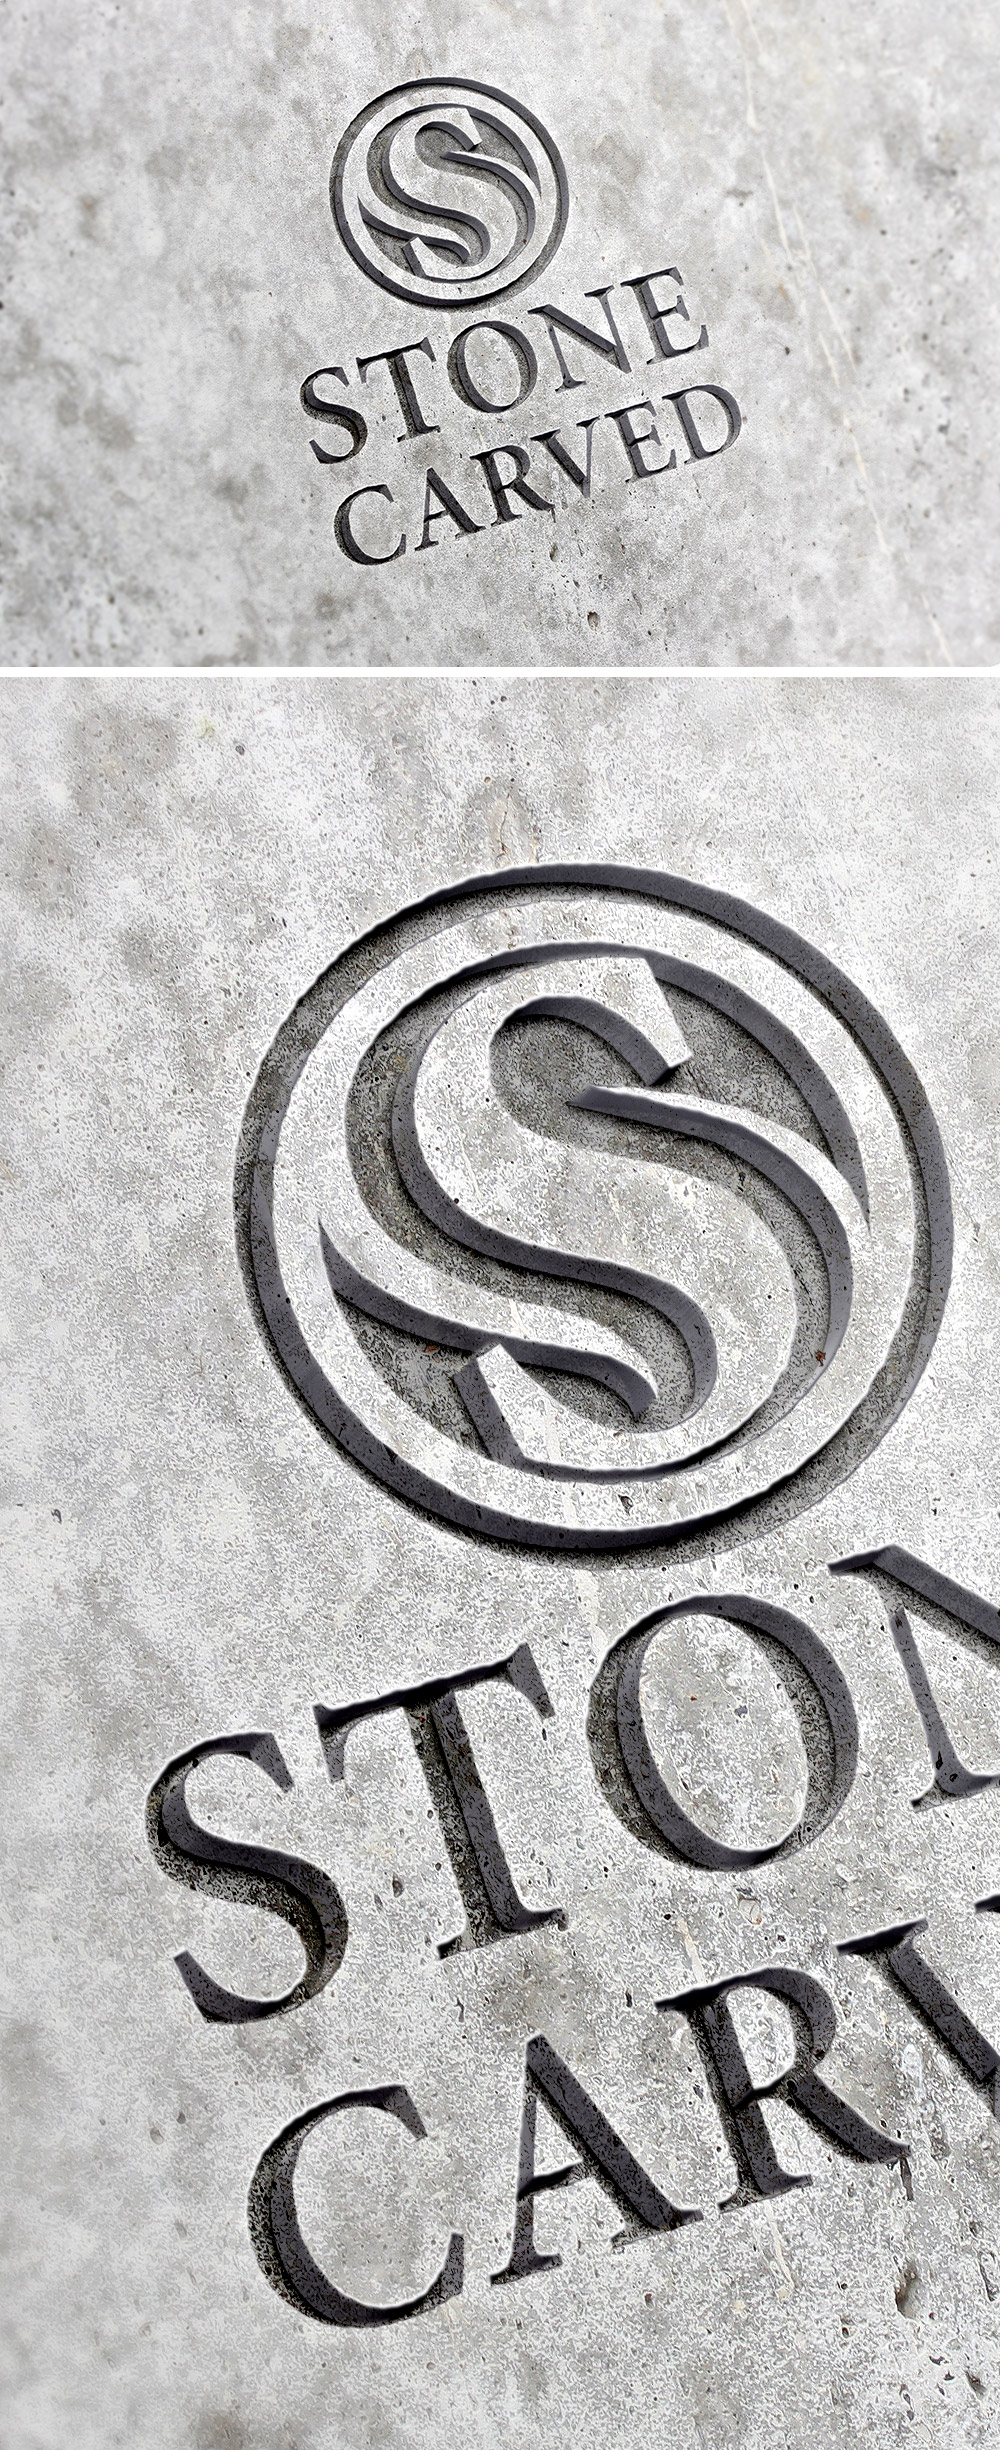 Carved Stone Logo Mockup